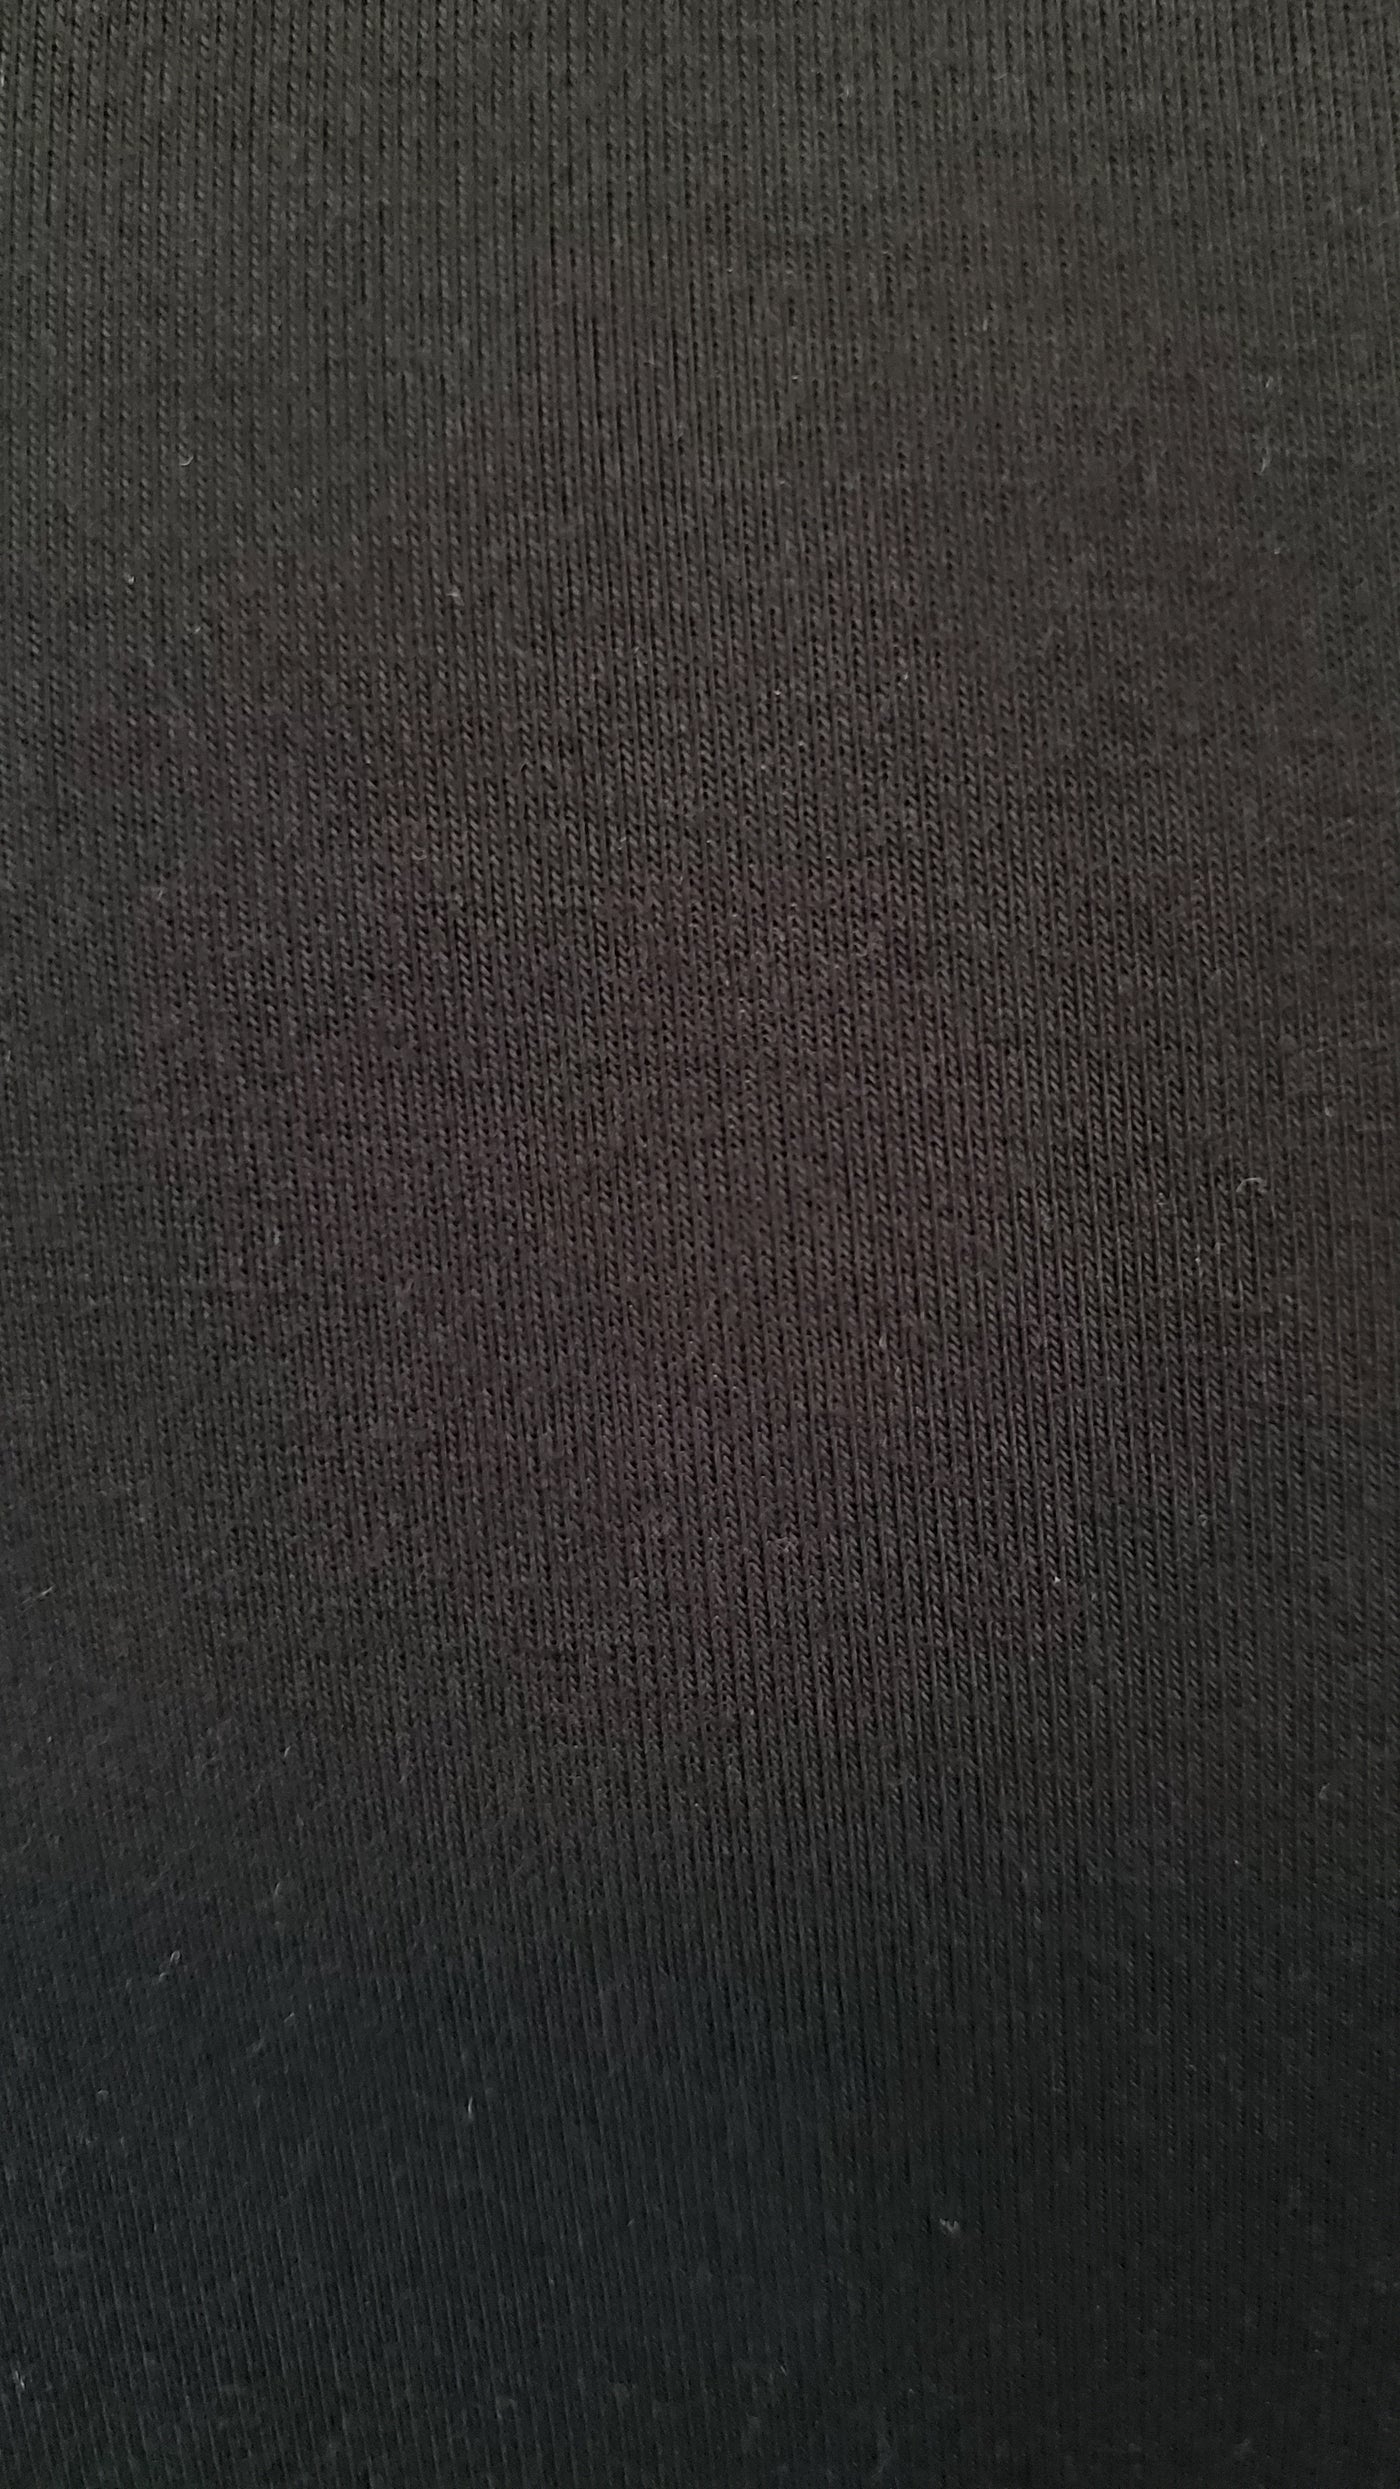 TERA long sleeve crop top in black